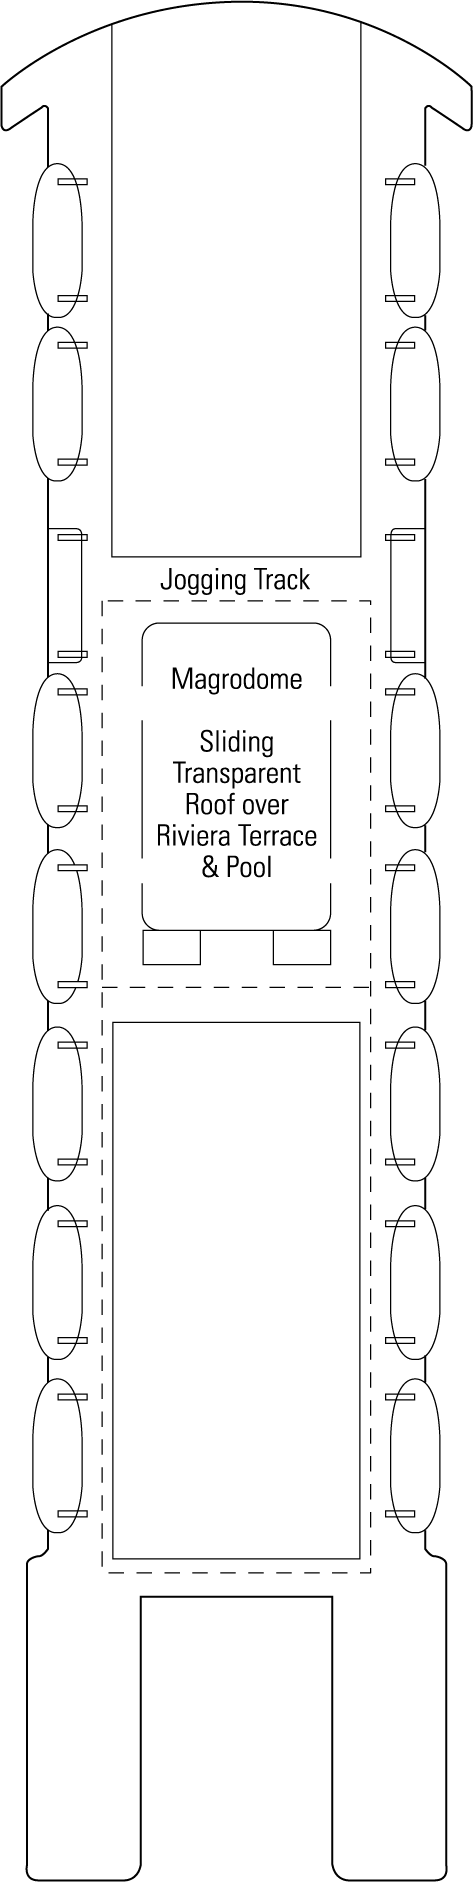 Sun Deck Deck Plan